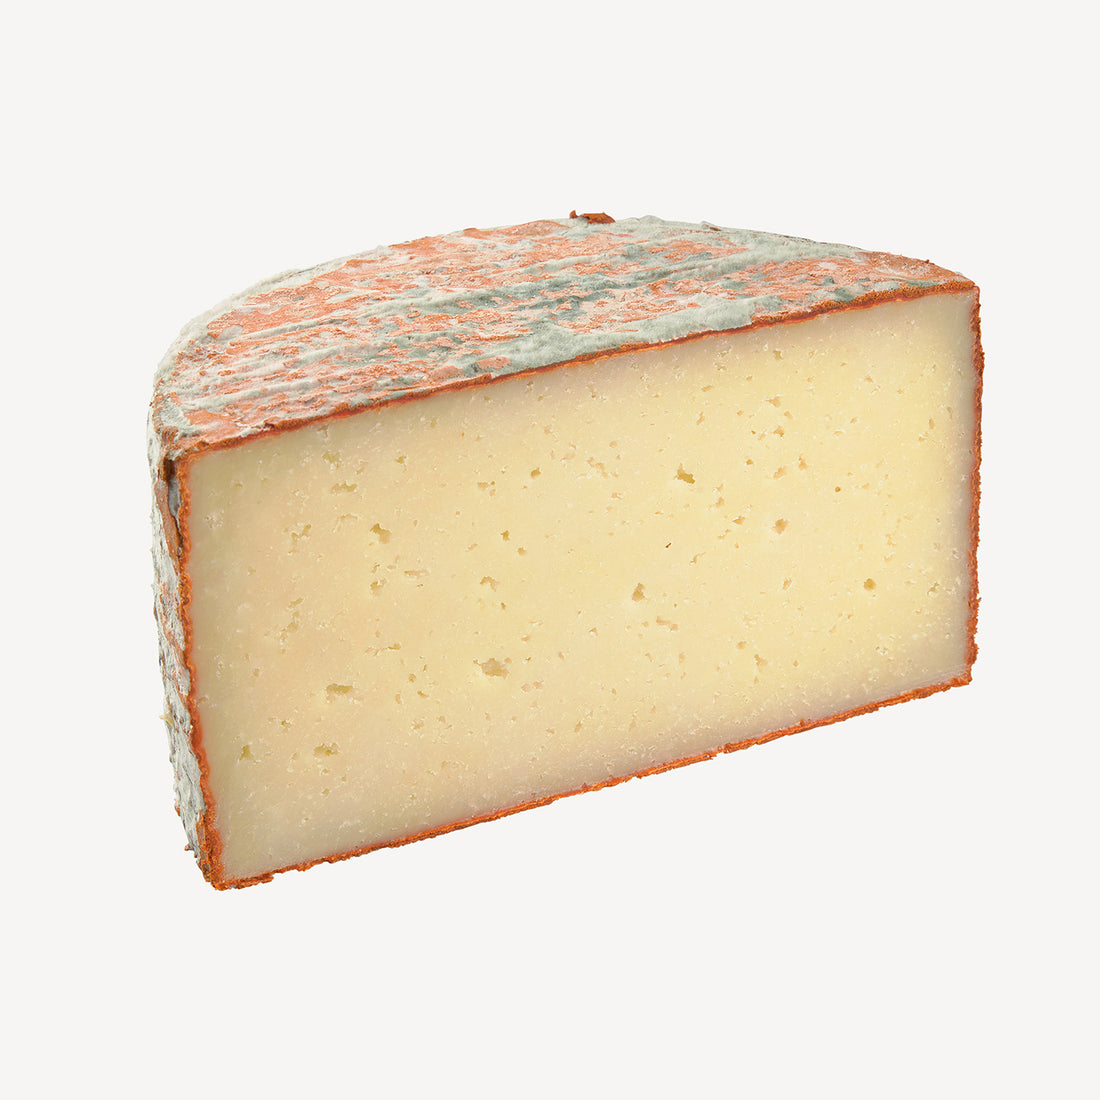 La vista lateral del queso muestra la penetración del pimentón, una invitación visual a explorar un sabor que combina tradición y picante.